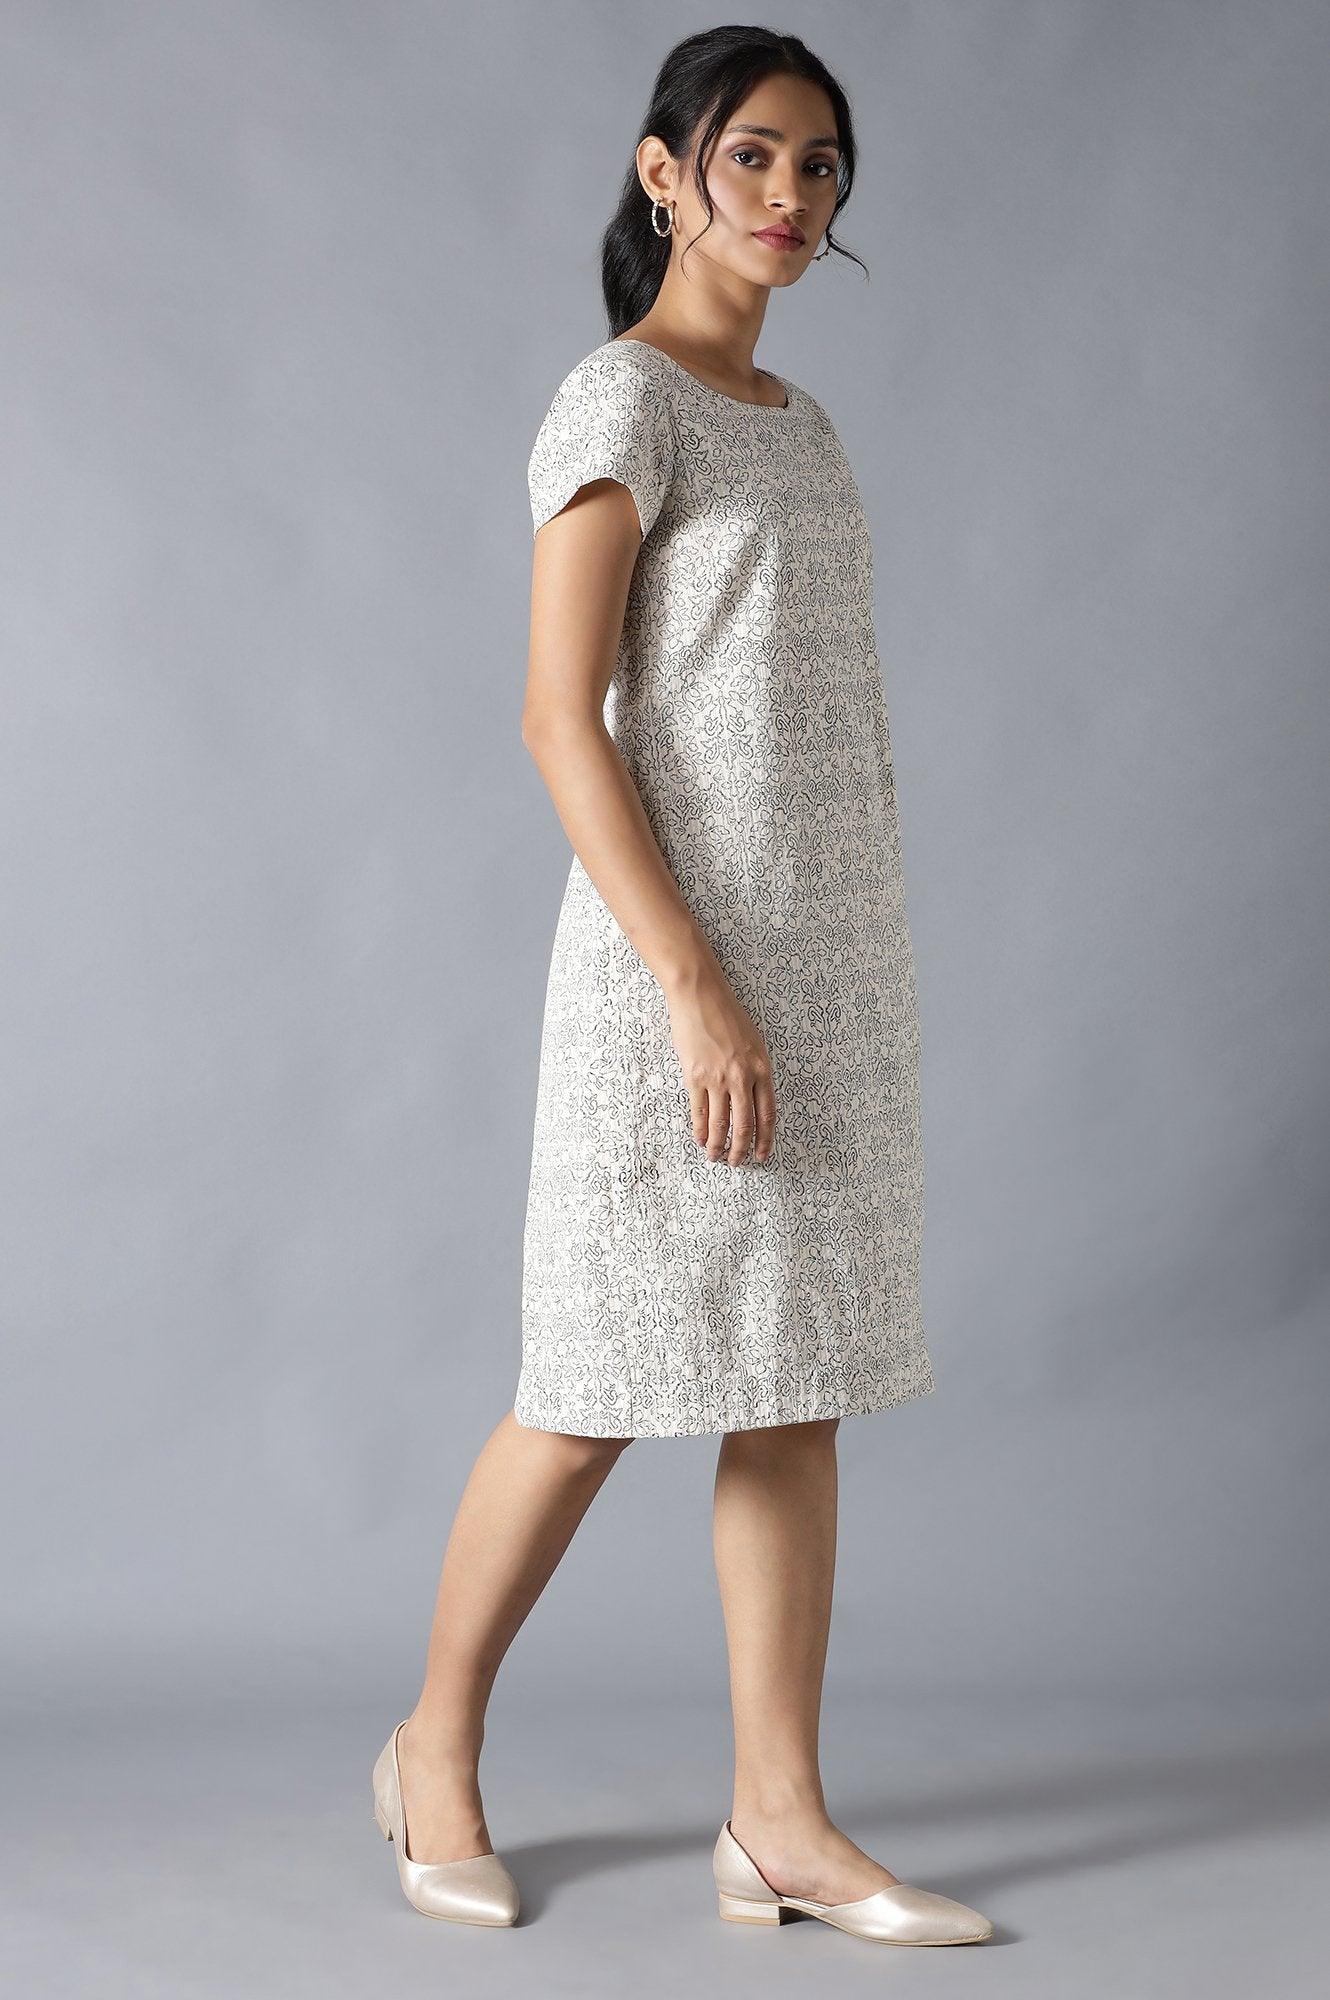 Ecru Cotton Embroidered Dress In Round Neck - wforwoman